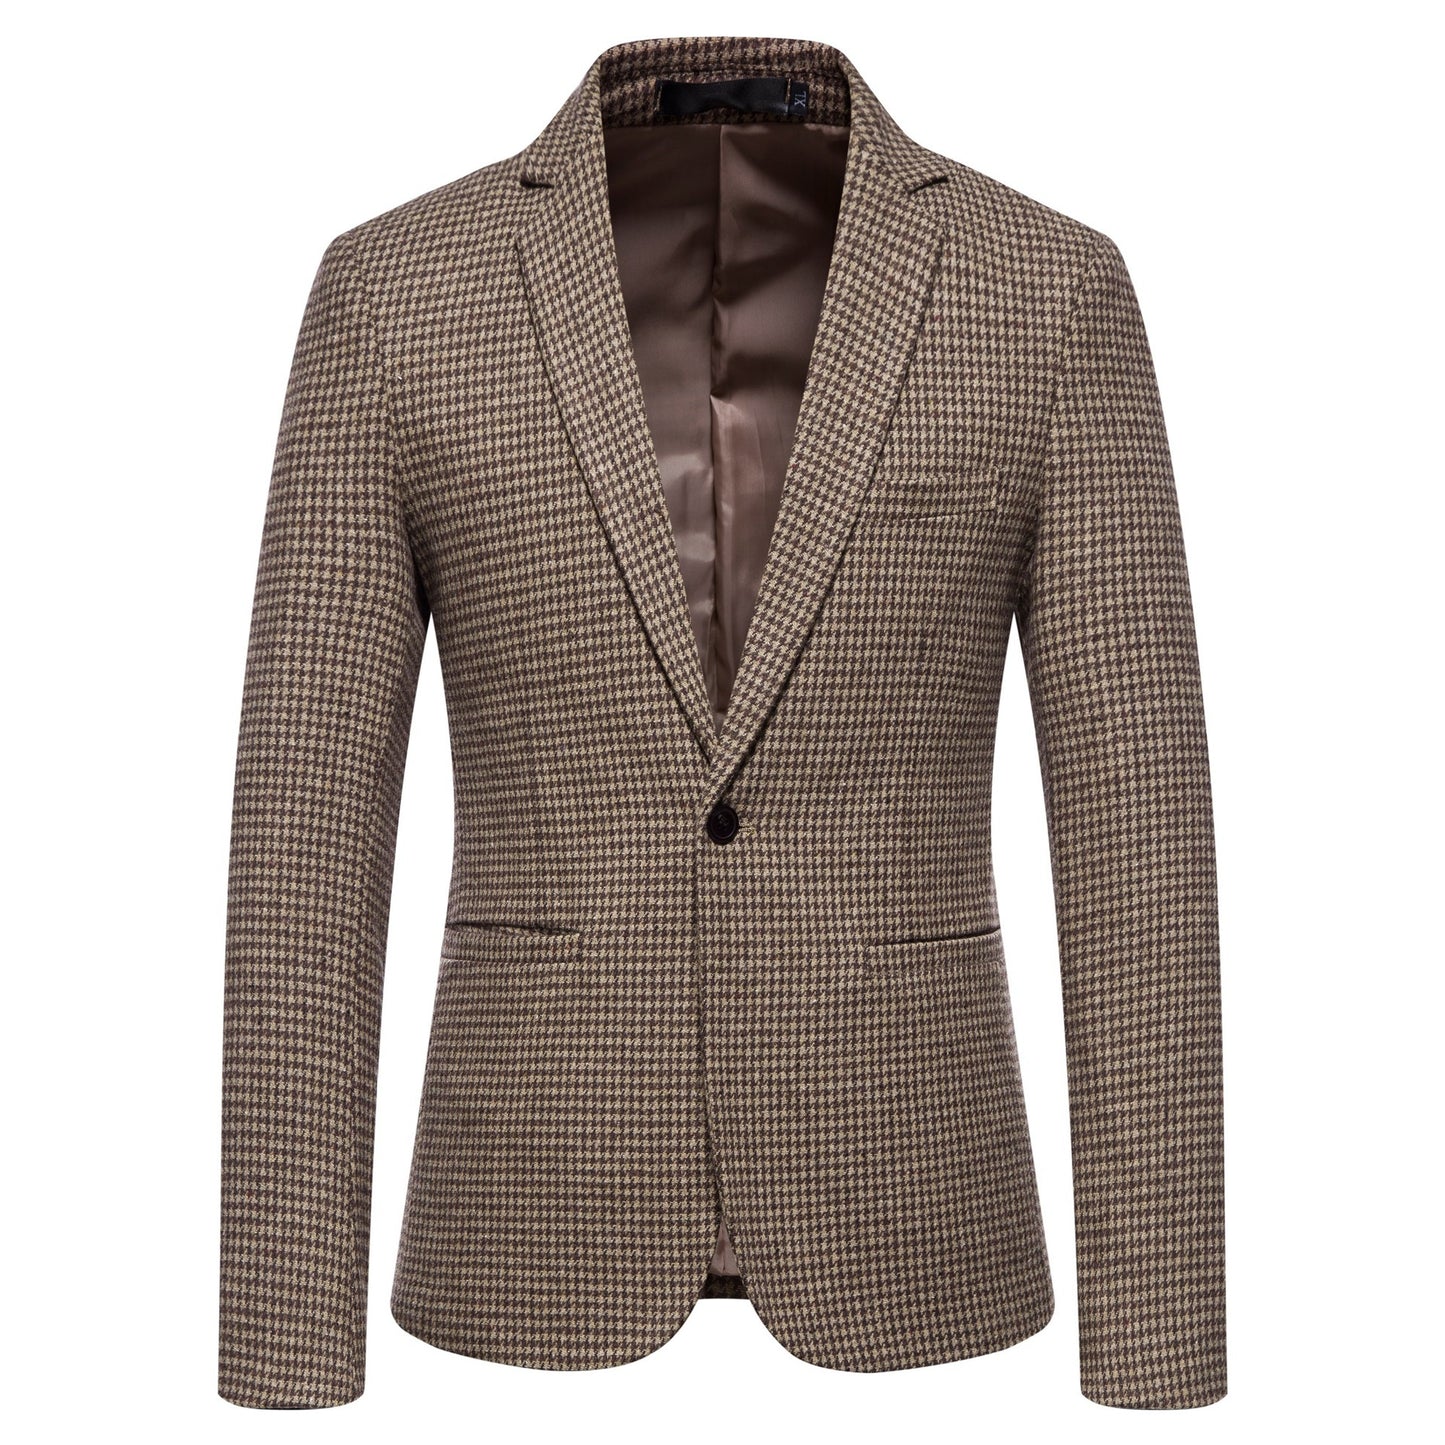 Men's Fashion Single Row One Button Suit Business Casual Trendy Woolen Suit Warm Jacket